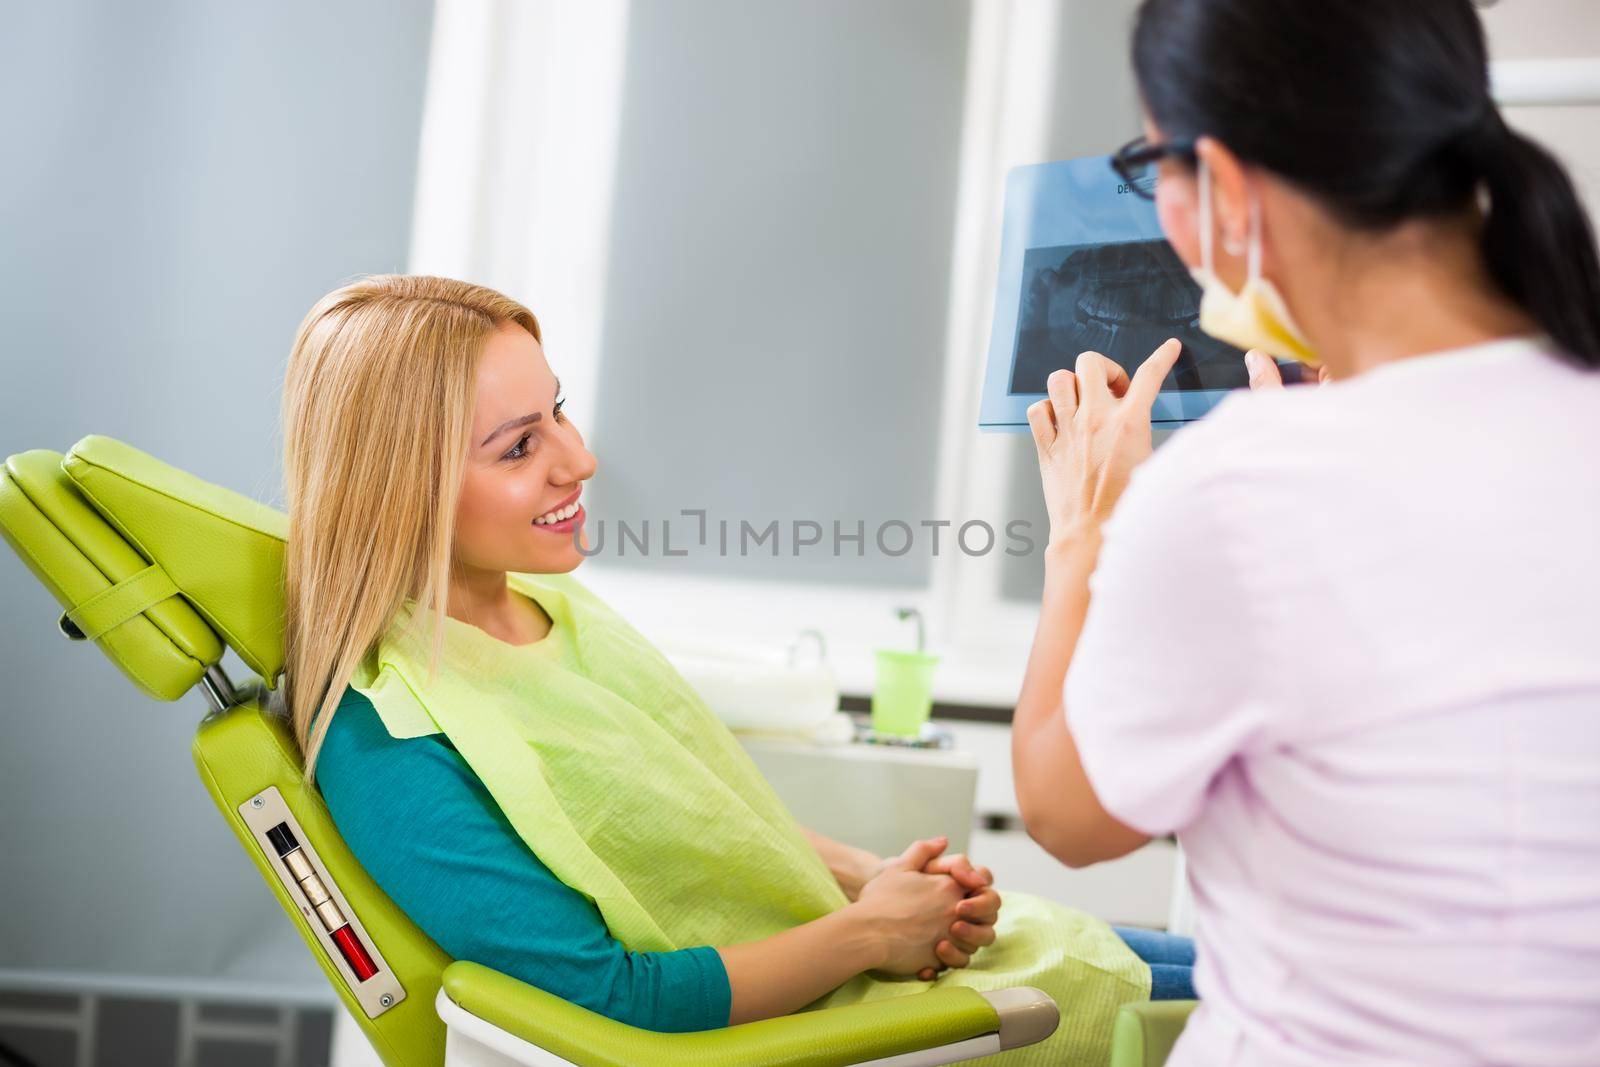 Young woman at dentist. Examining x-ray image.